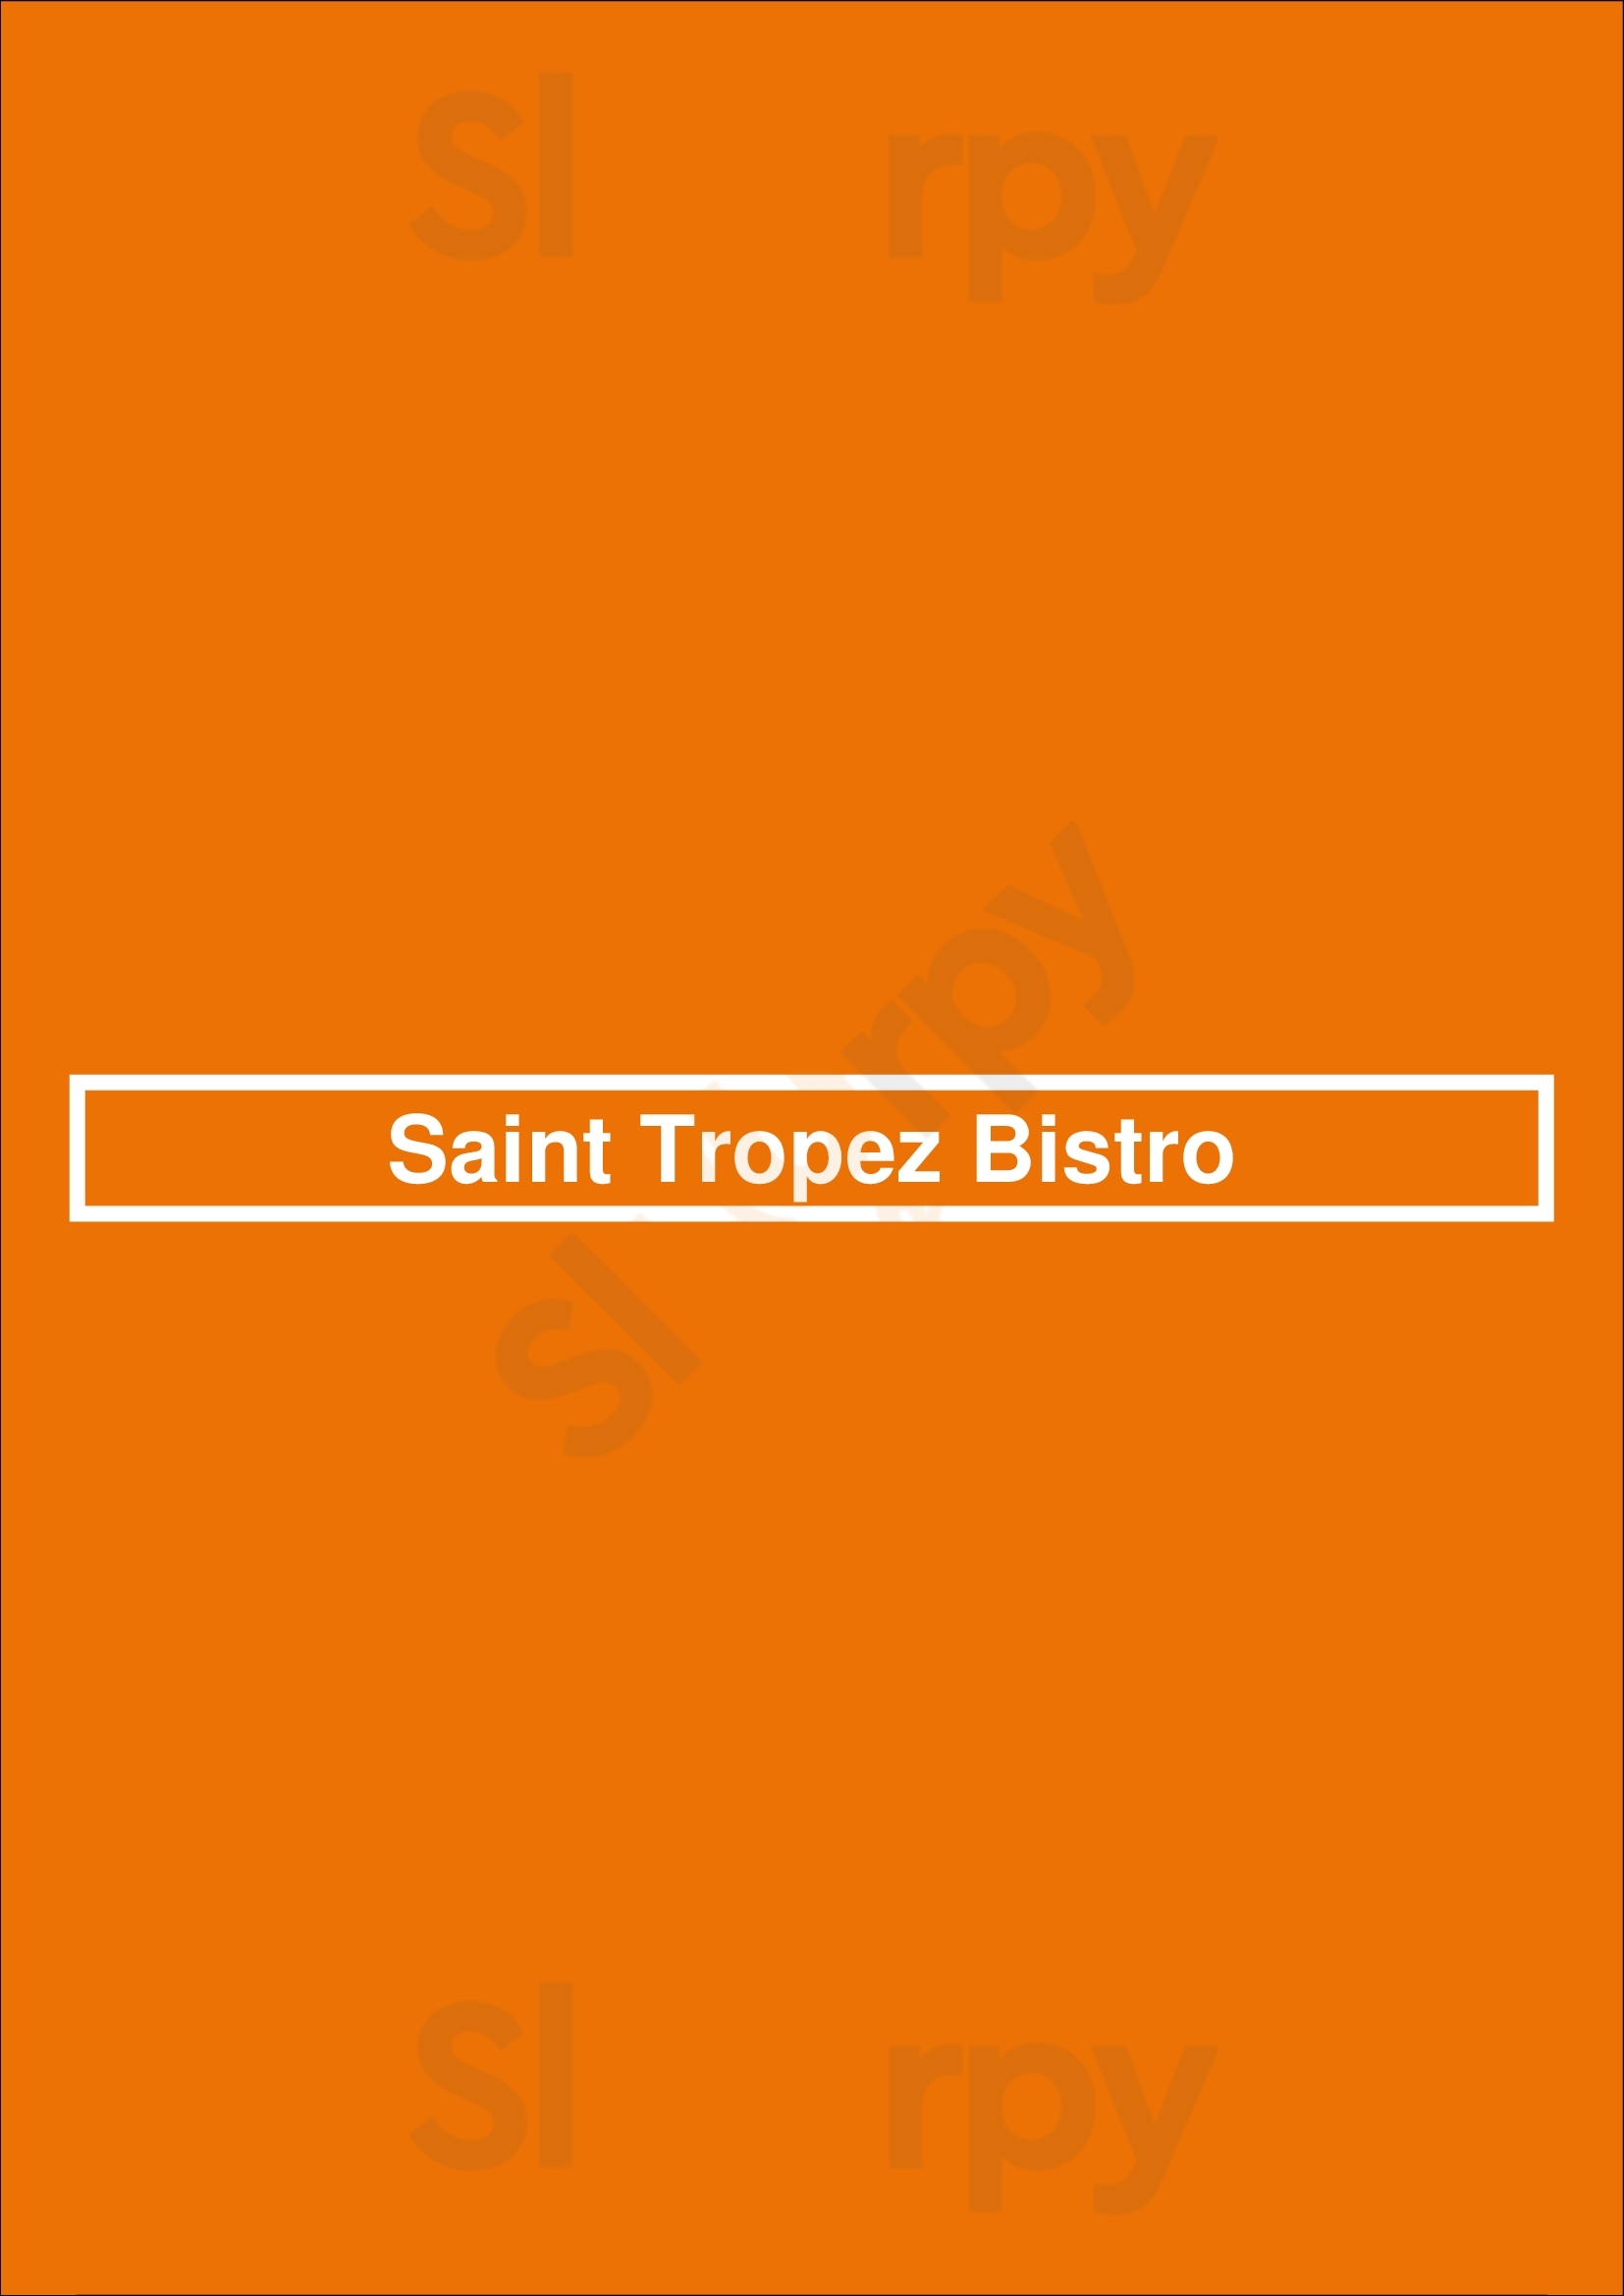 St. Tropez Bistro Saskatoon Menu - 1